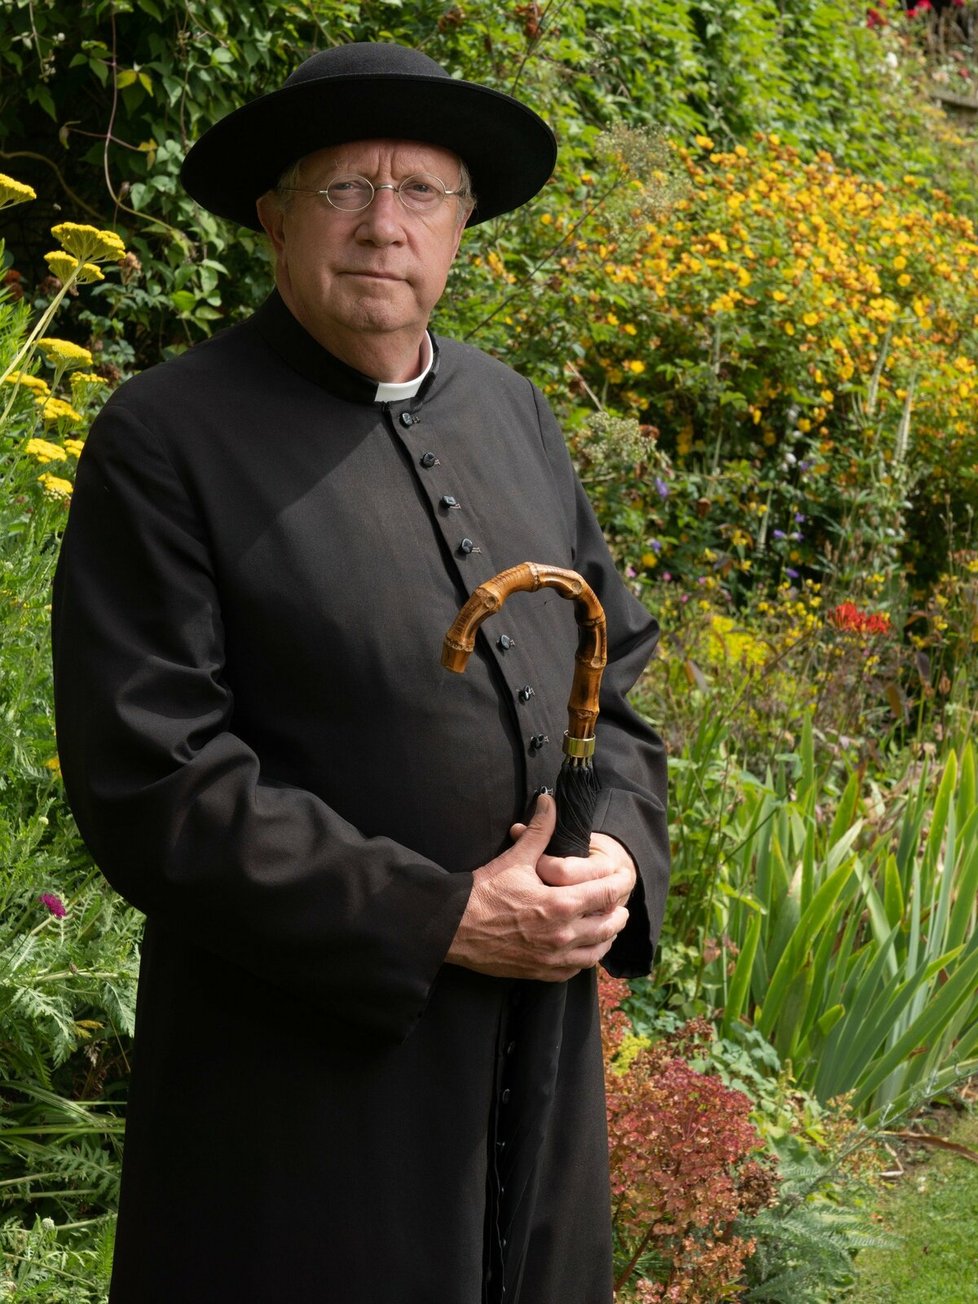 Mark Williams jako katolický kněz otec Brown z kostela sv. Marie ve fiktivním Kemblefordu, znalec lidských duší a zpovědních tajemství se zálibou v řešení zločinů, kterou dosti nelibě nese místní policejní inspektor.